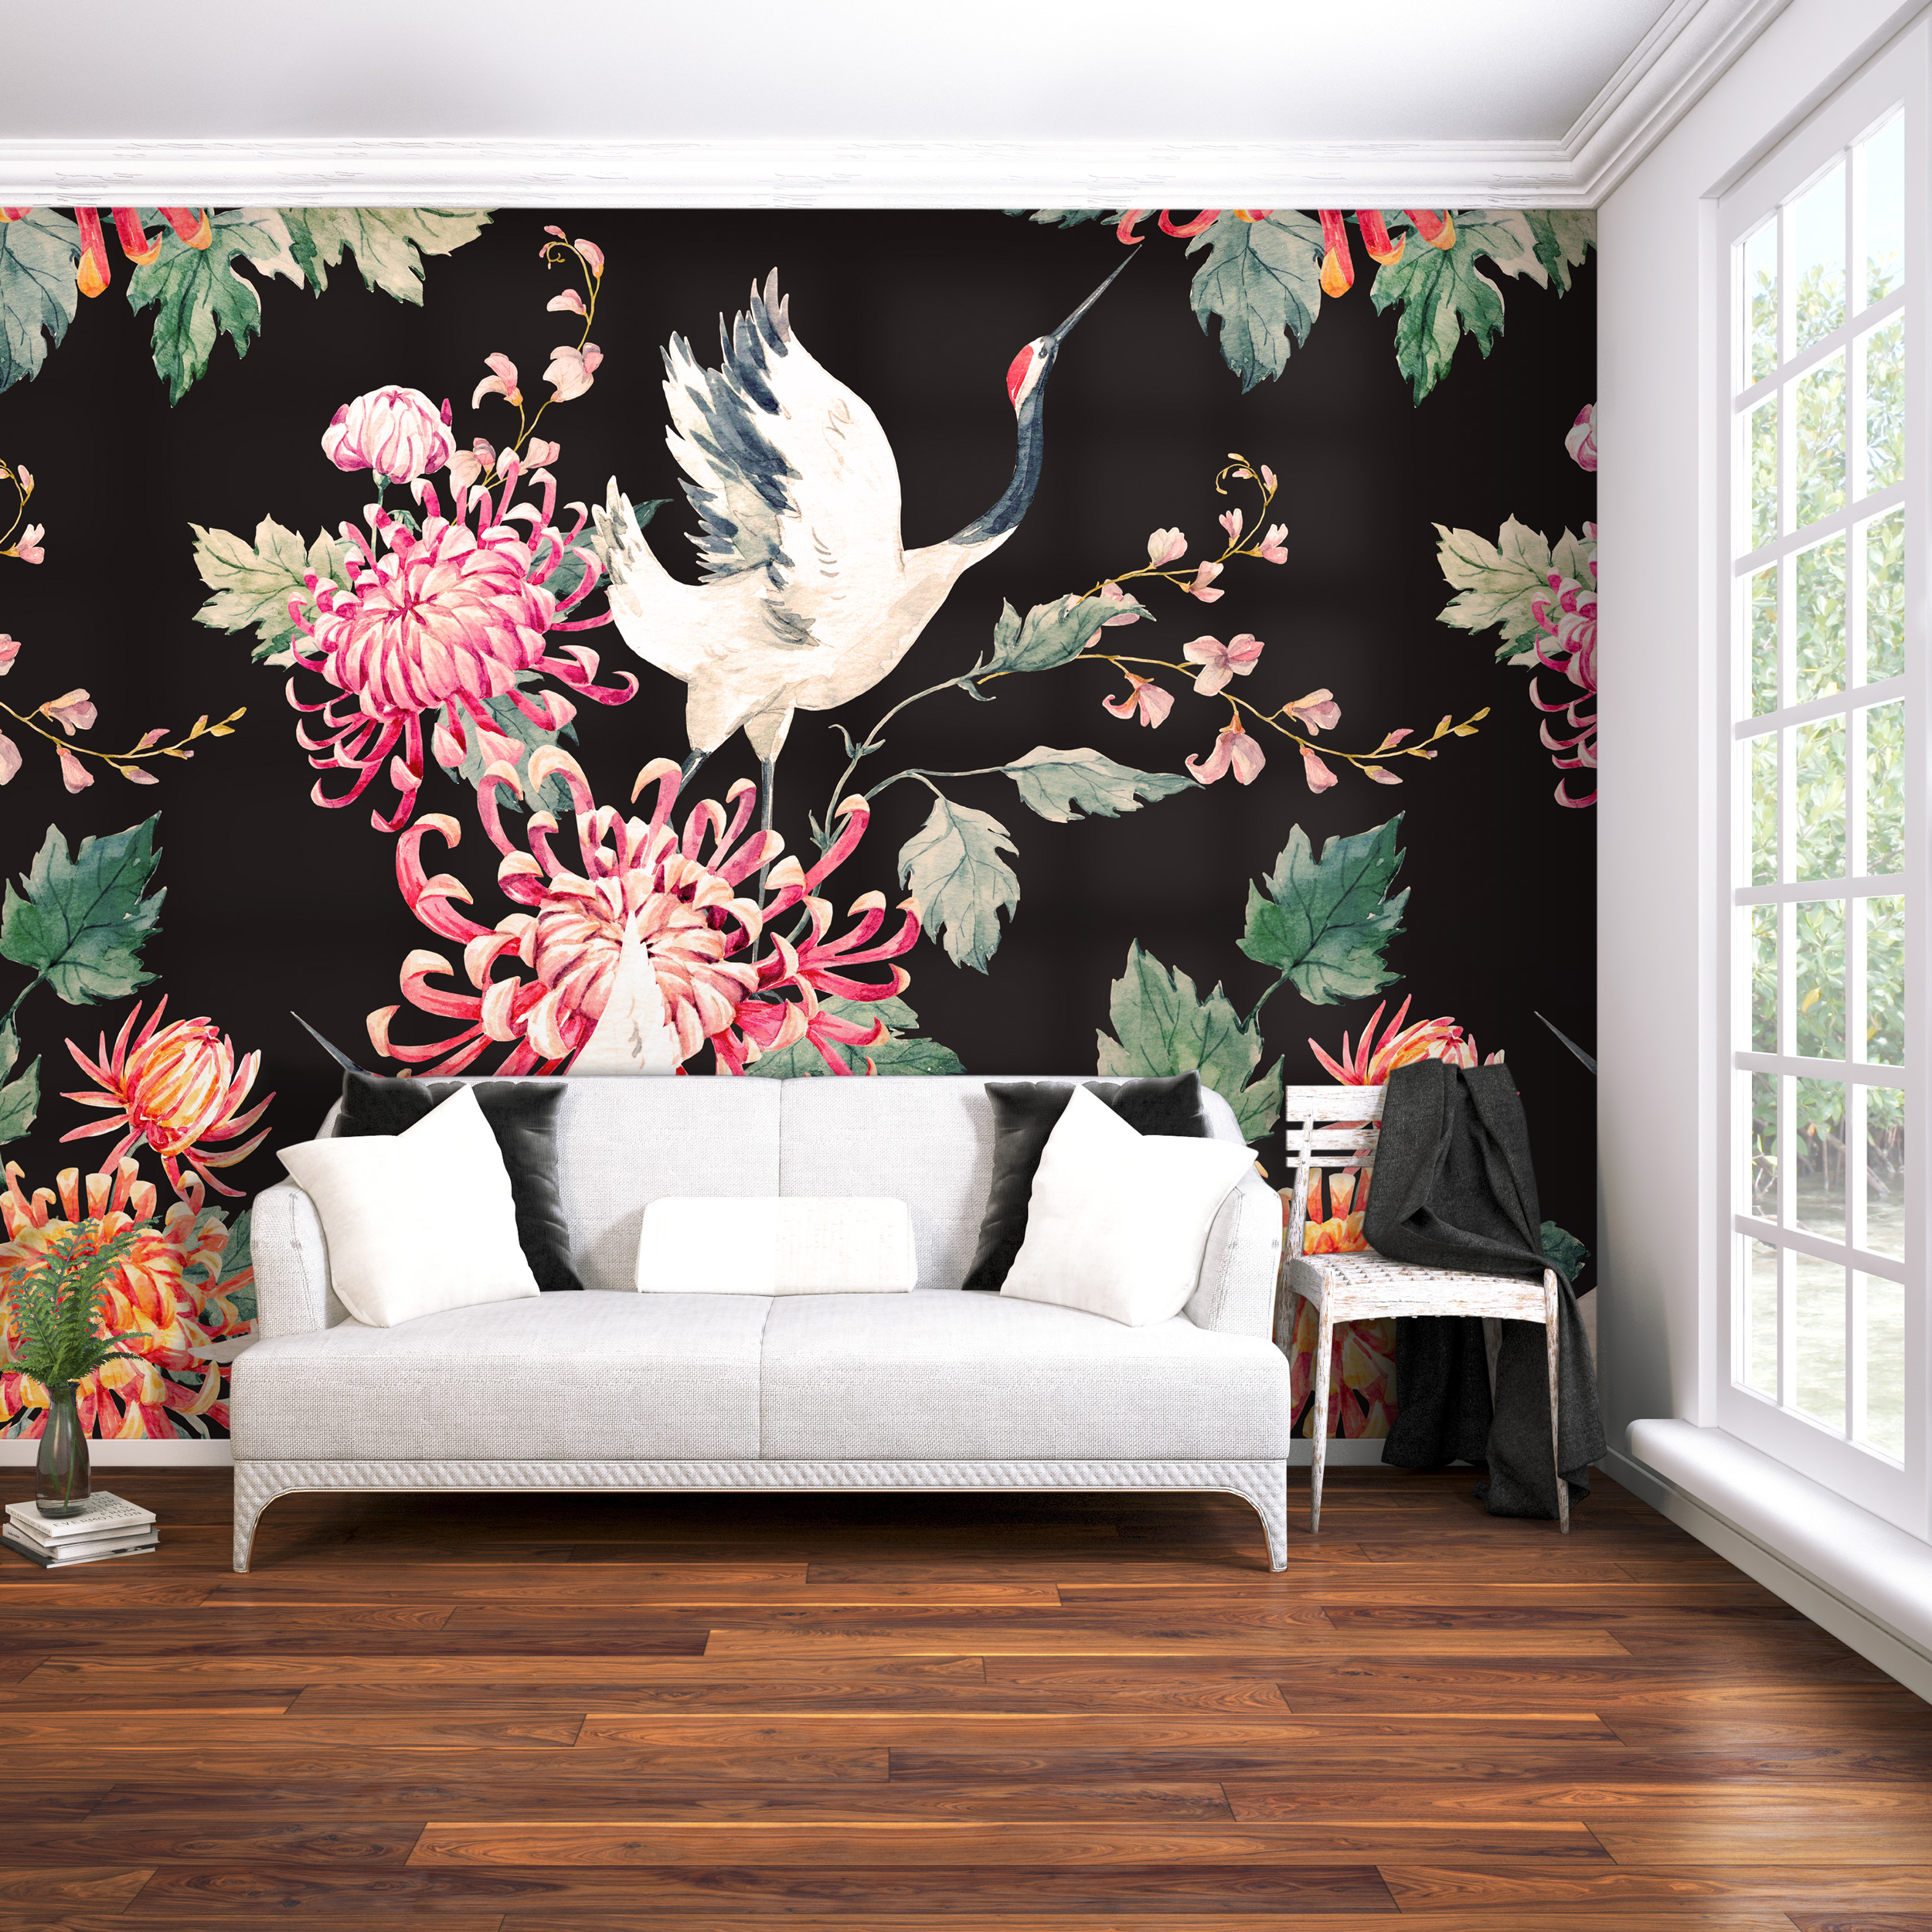 Vlies Fototapeten Wandtapete Wandbilder Retro Schönheit Blumen und Vögel 7237